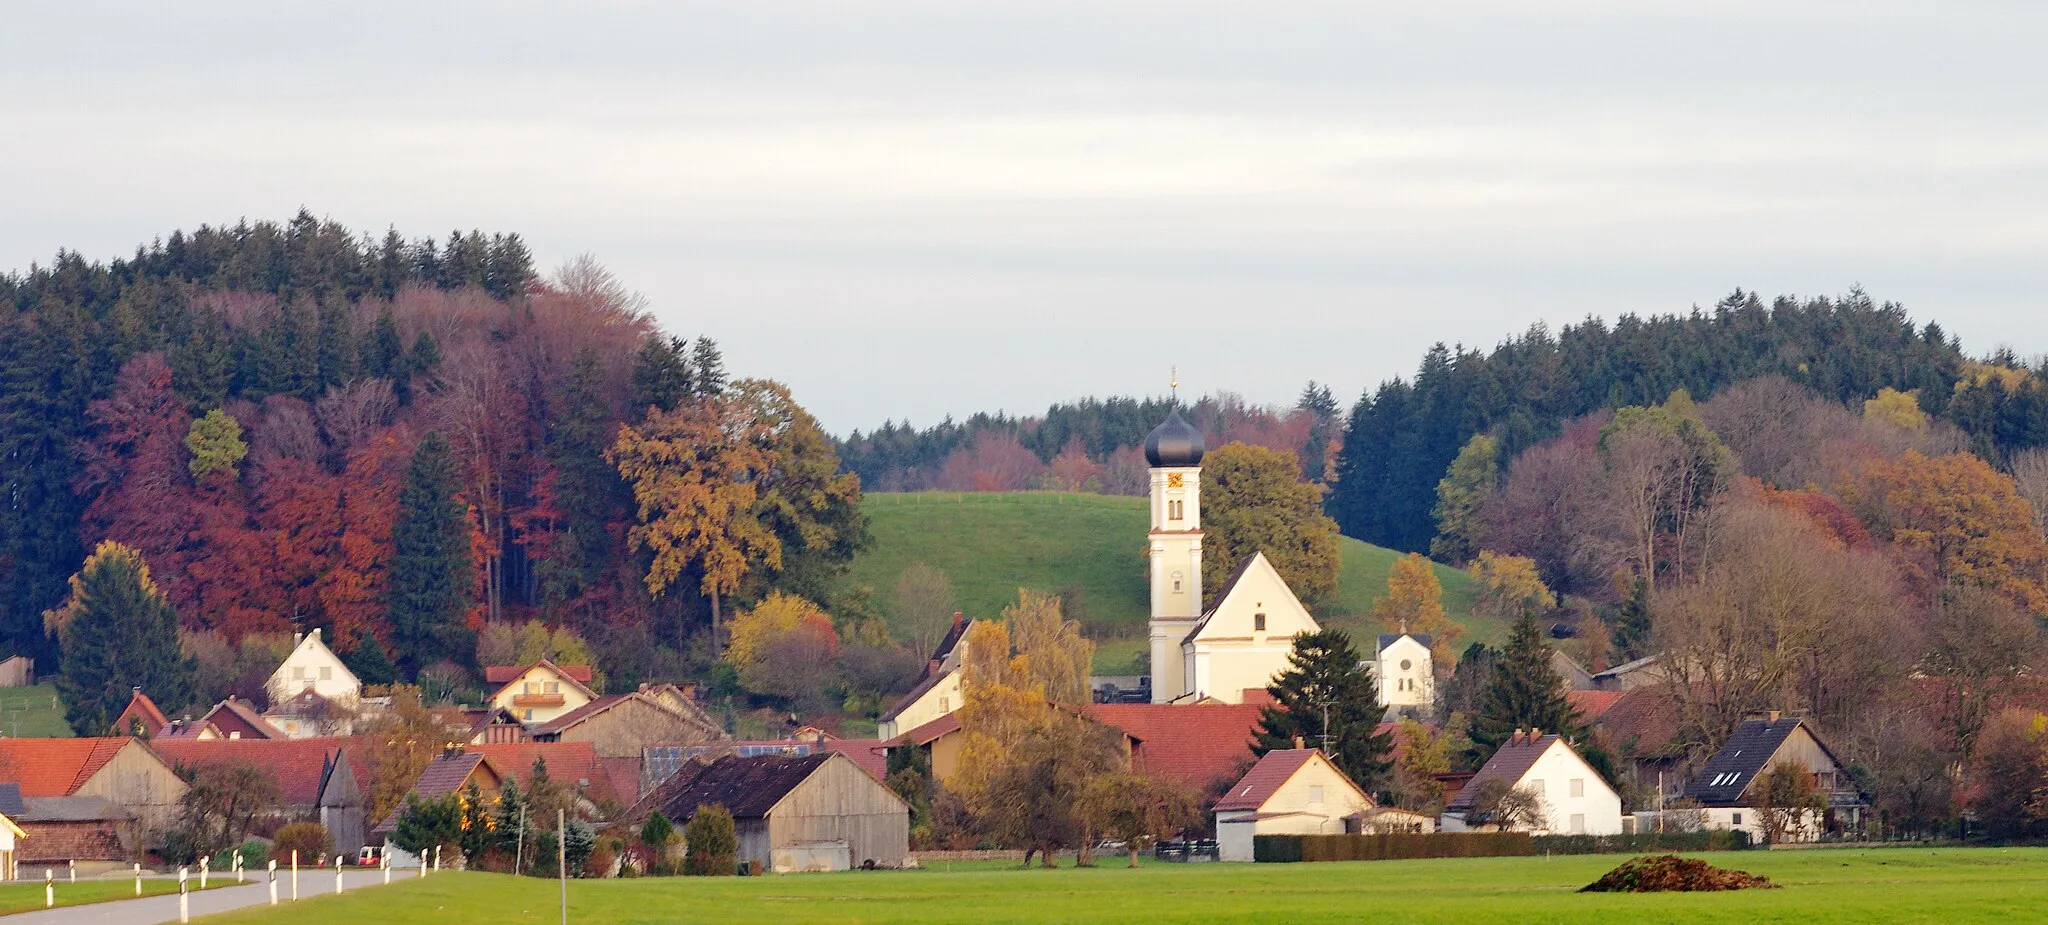 Photo showing: Blick auf Mindelau, einem Ortsteil von Mindelheim mit der Kirche die St. Jakobus dem Älteren geweiht ist